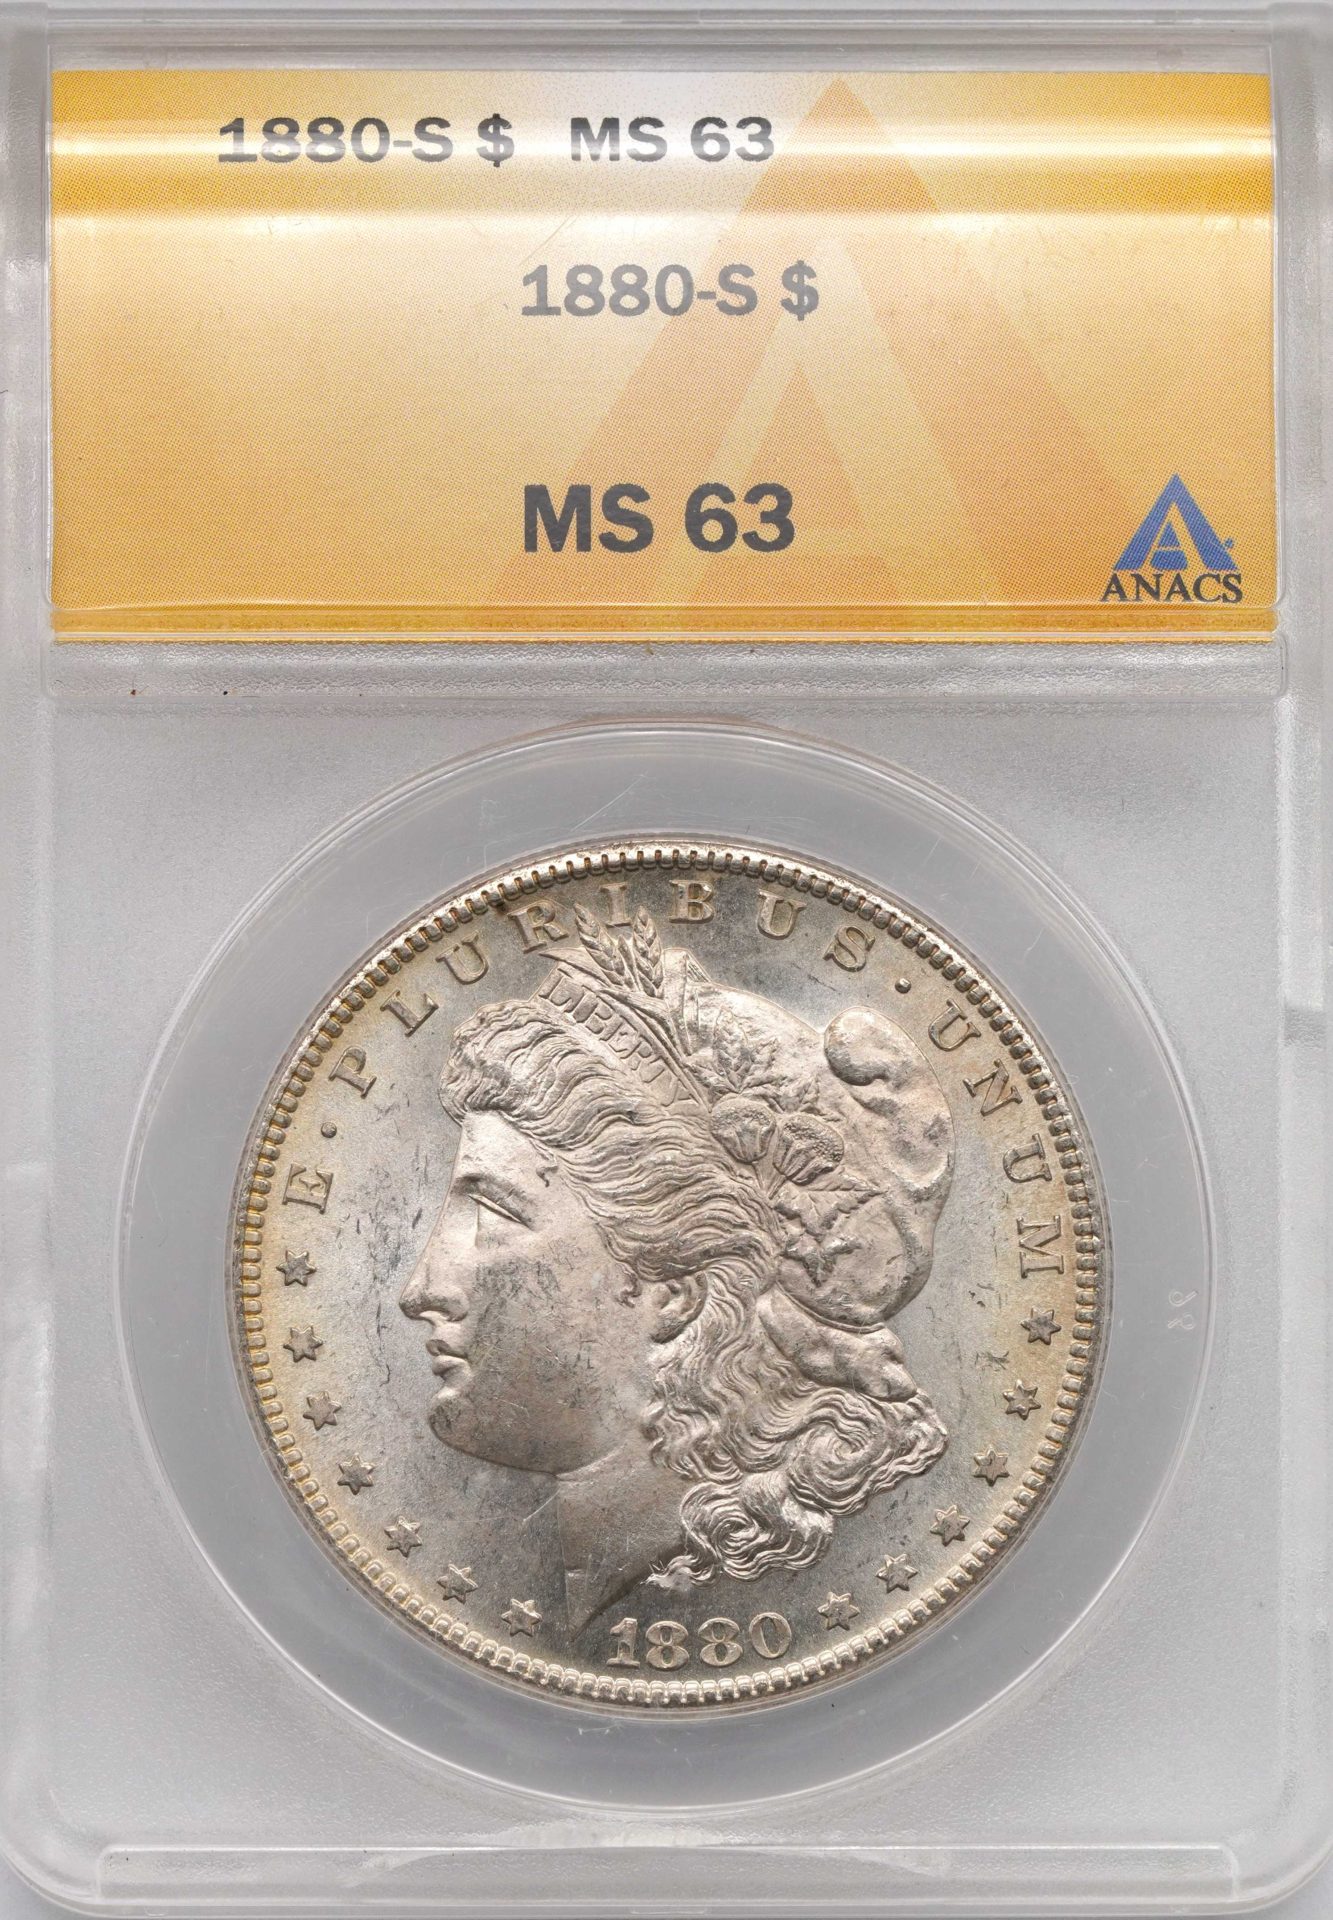 1880-S ANACS MS63 Morgan Silver Dollar - IGP Metals